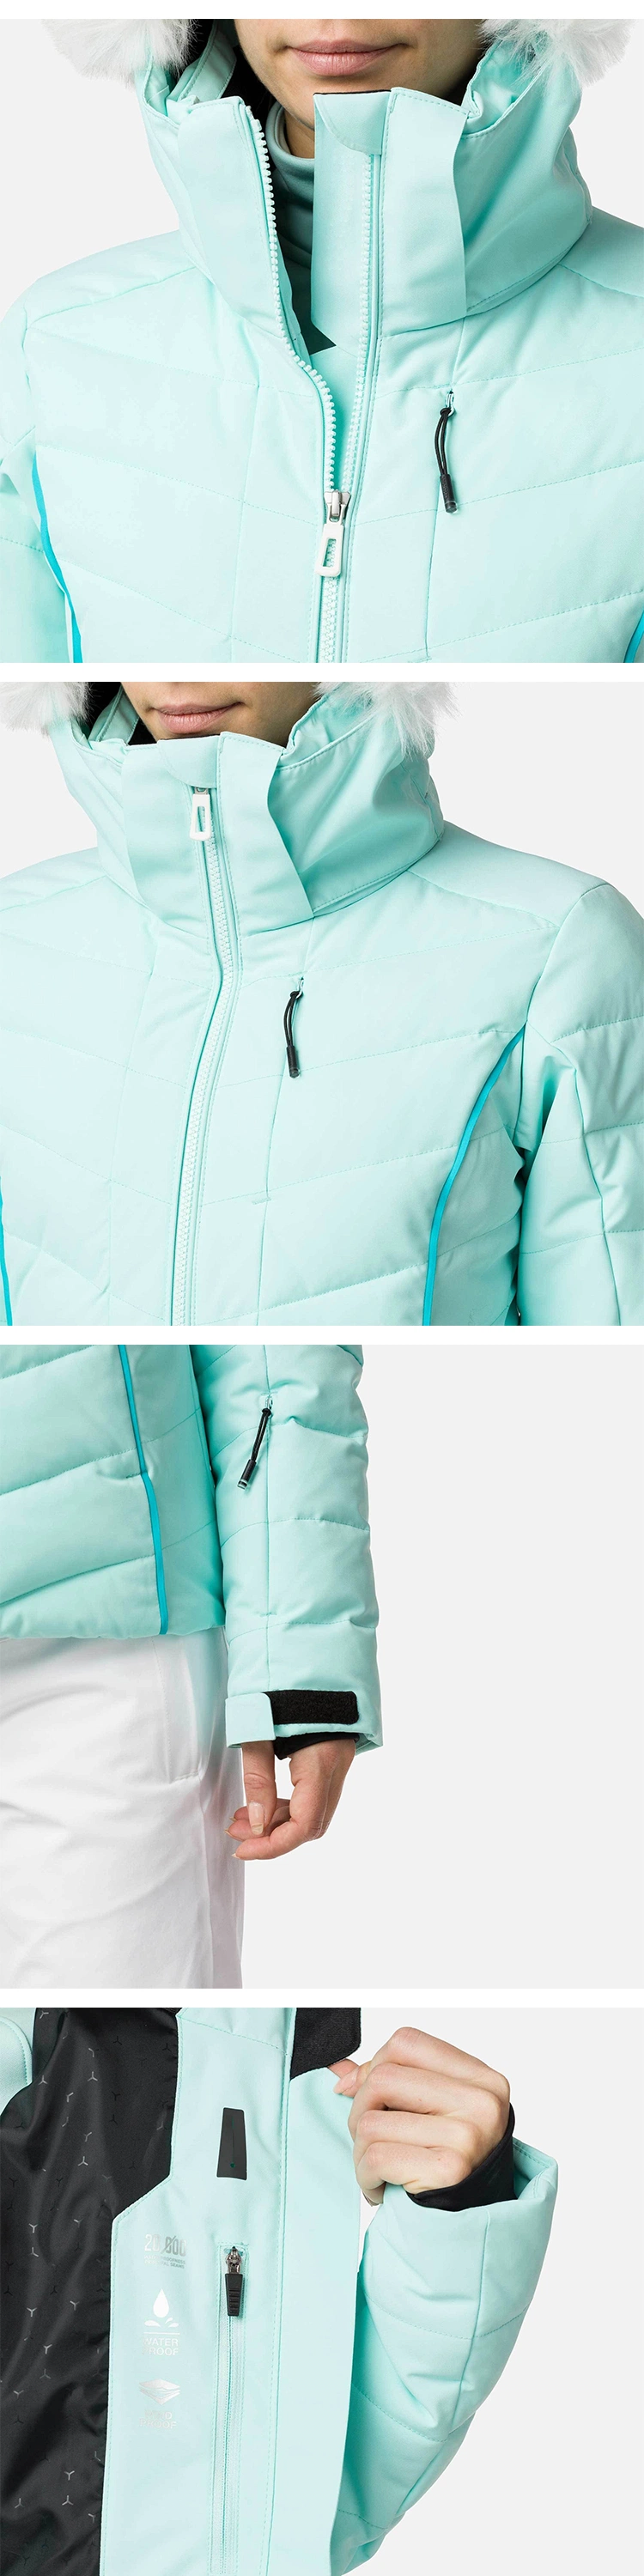 OEM/ODM Ski Clothing Women Winter Warm Waterproof Snow Wear Custom Best Womens Ski Jackets